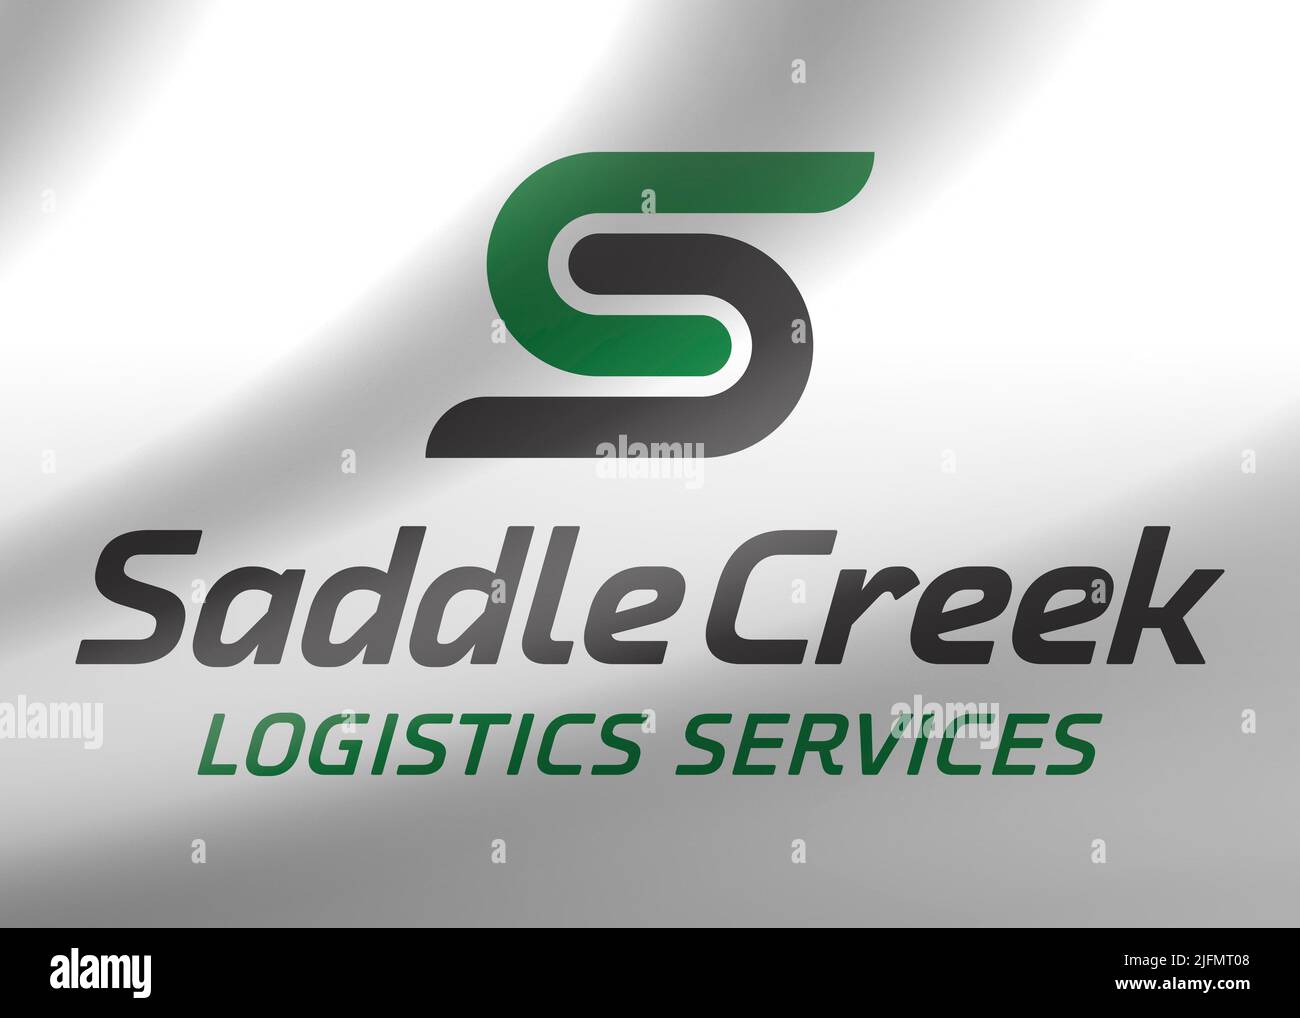 Saddle Creek logo Stock Photo